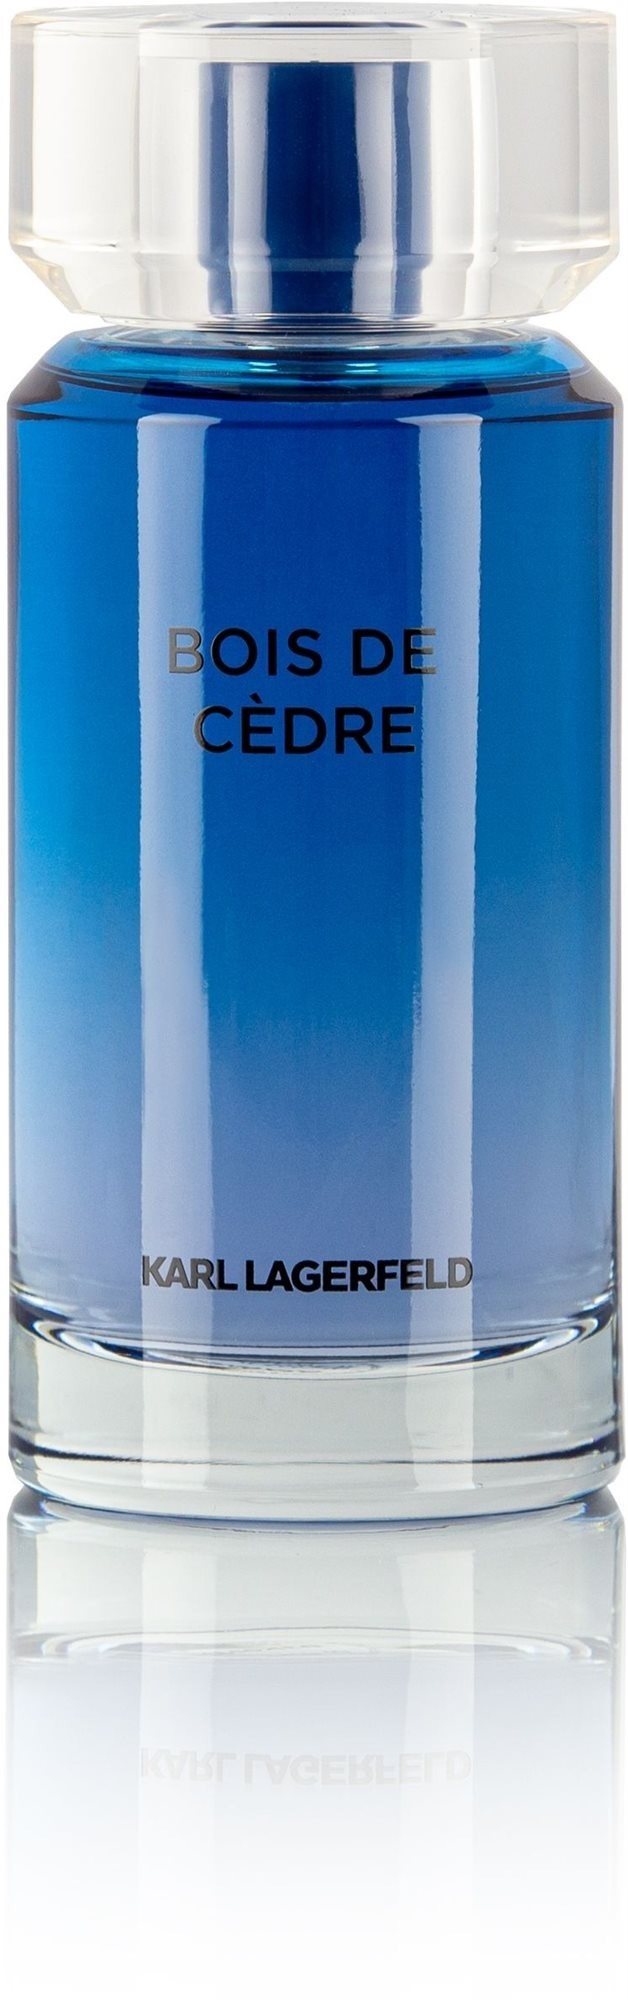 KARL LAGERFELD Bois De Cedre EdT